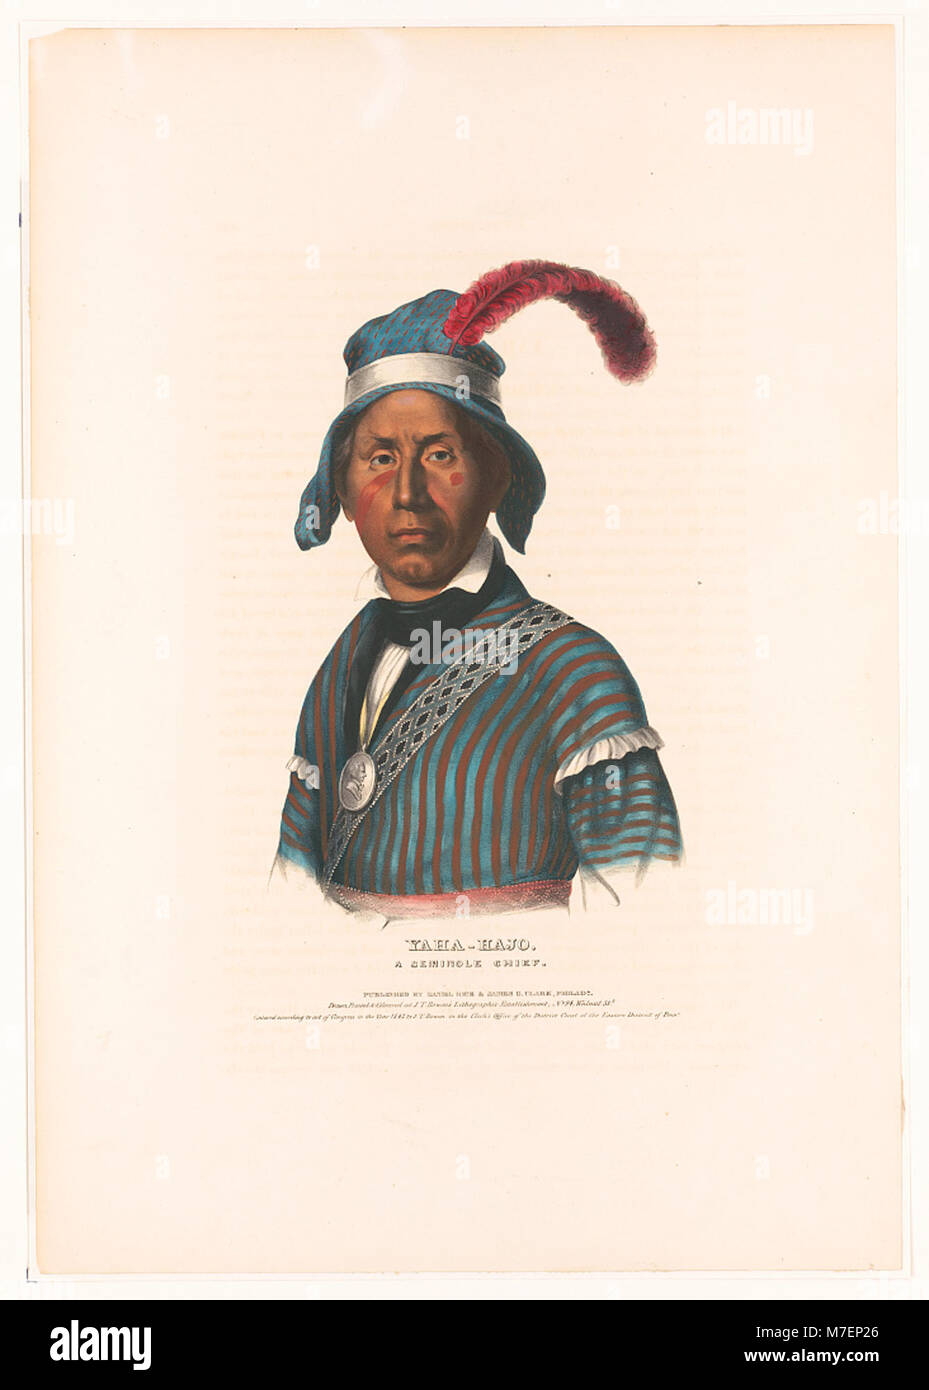 Yaha-Hajo. Ein Seminole Chief - gezeichnet, gedruckt und an J.T. farbige Bowens lithographischen Einrichtung, 94 Walnut St't. LCCN 2013645366 Stockfoto